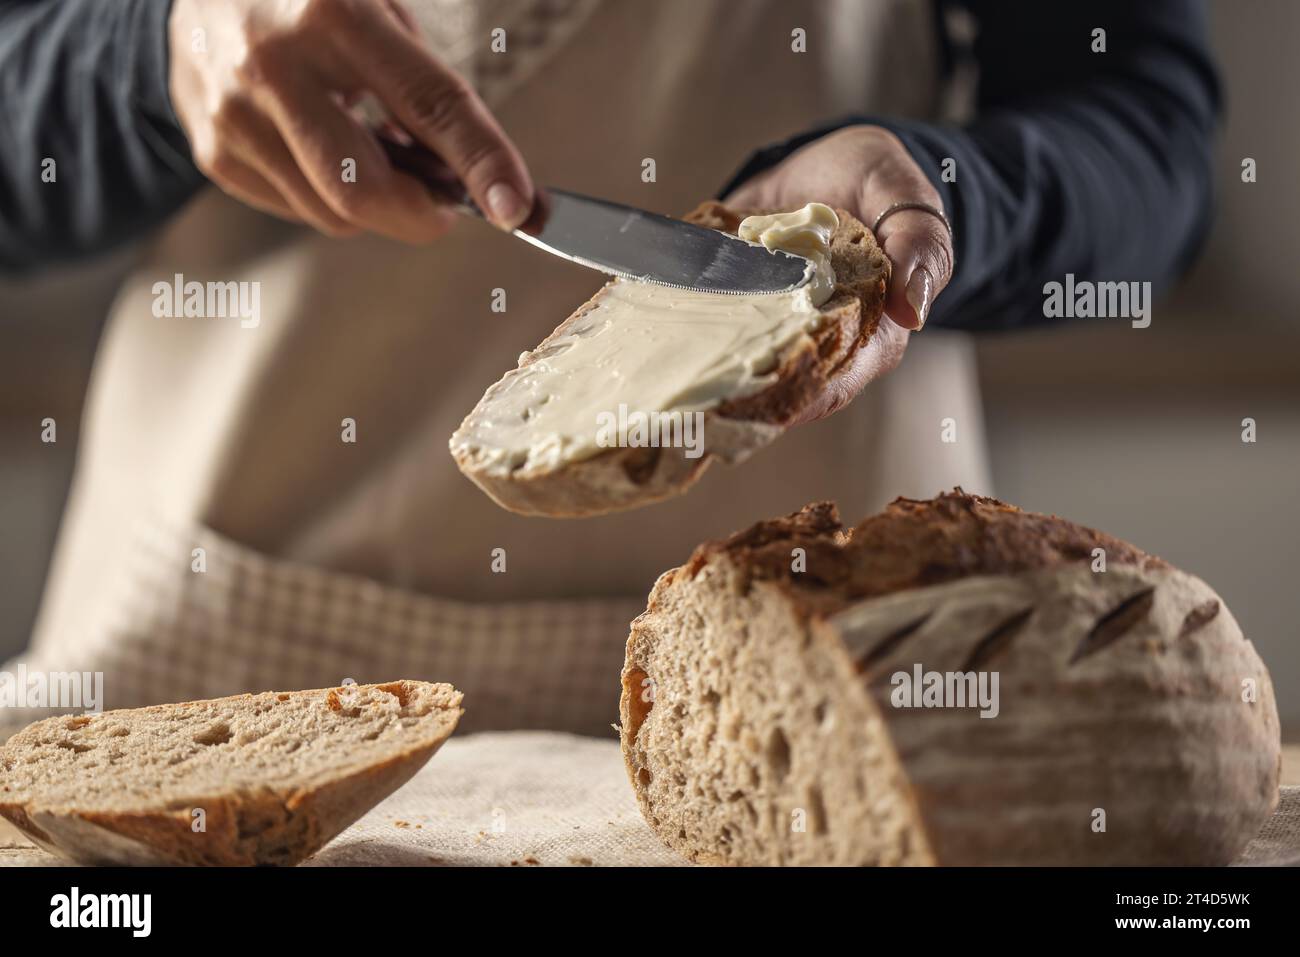 Une femme fait du pain délicieux, étale du fromage à la crème avec un couteau à couverts - Close up. Mains de femme étalant le fromage à la crème sur la tranche de pain. Banque D'Images